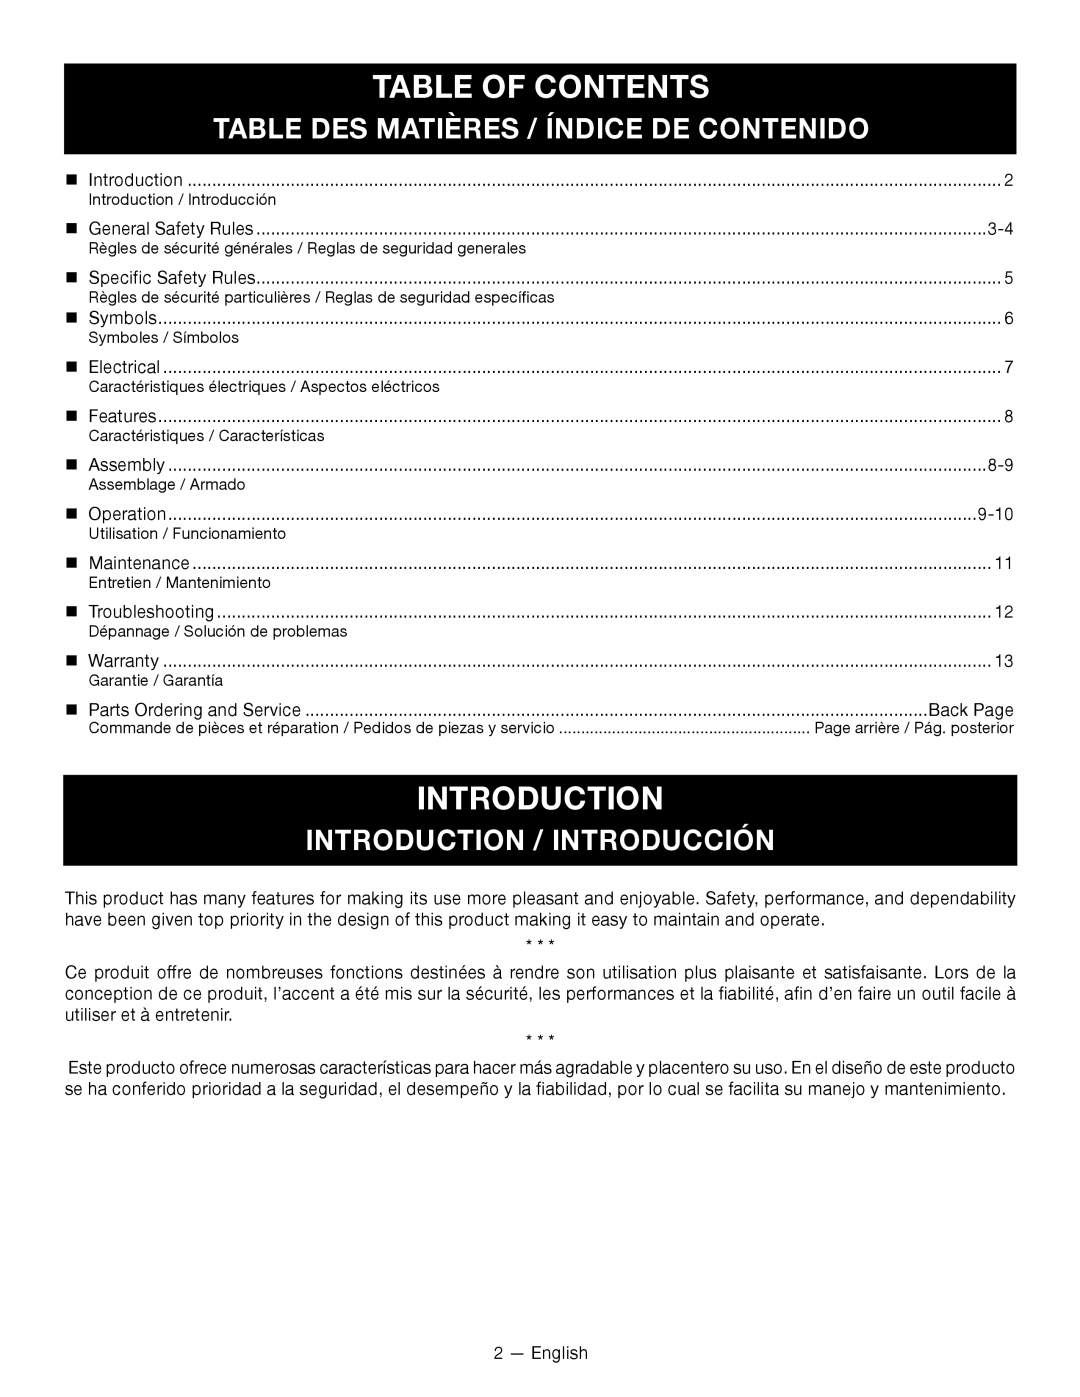 Homelite UT49103 Table Of Contents, Table Des Matières / Índice De Contenido, Introduction / Introducción 